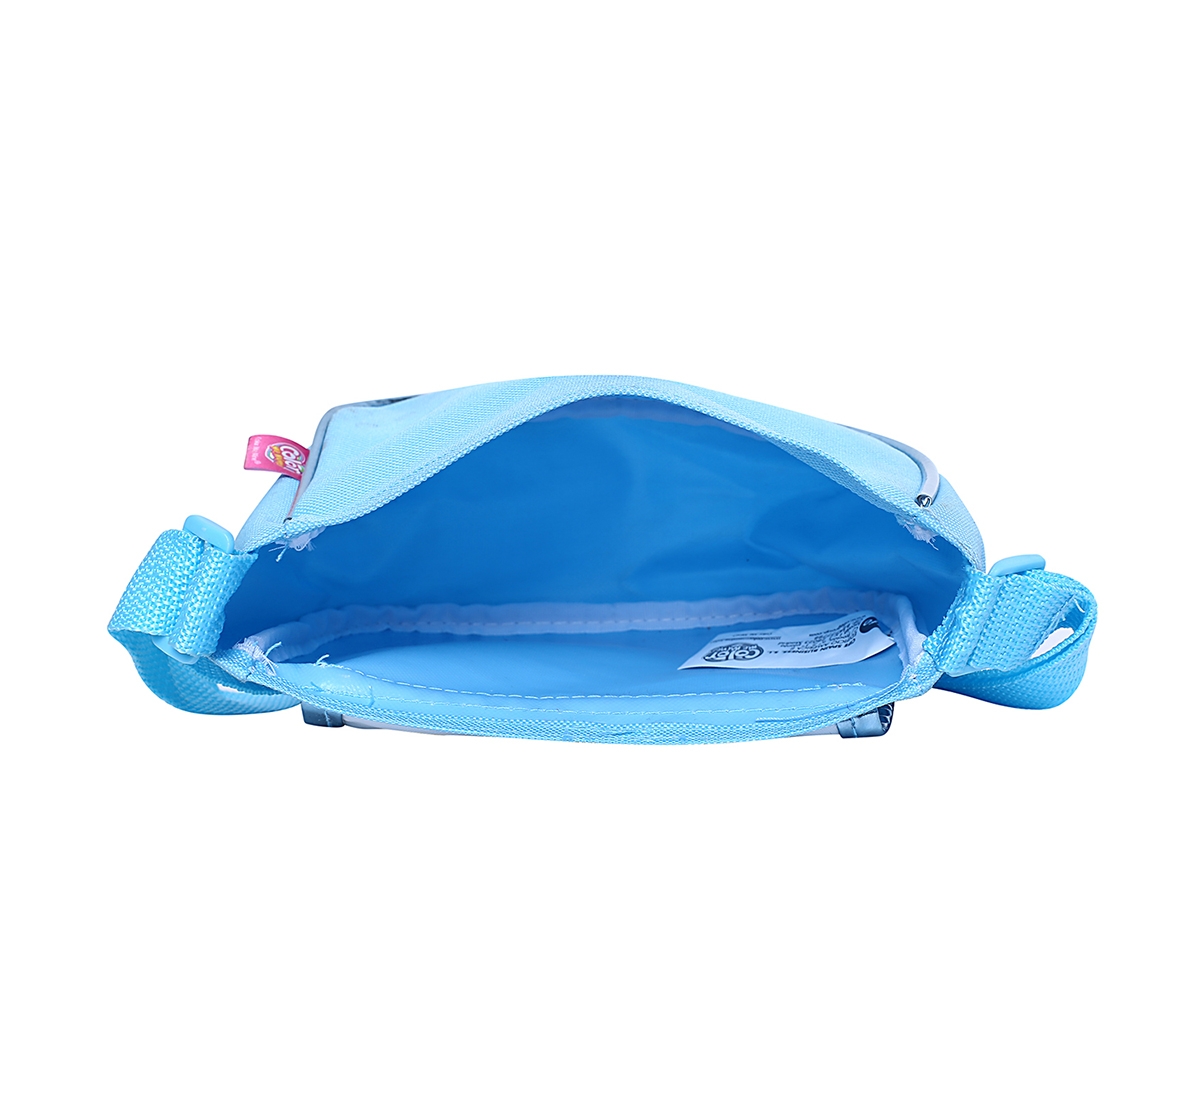 DISNEY | Disney Simba Color Me Mine Spring Sequin Bag - Frozen, Blue DIY Art & Craft Kits for Kids age 6Y+ 4